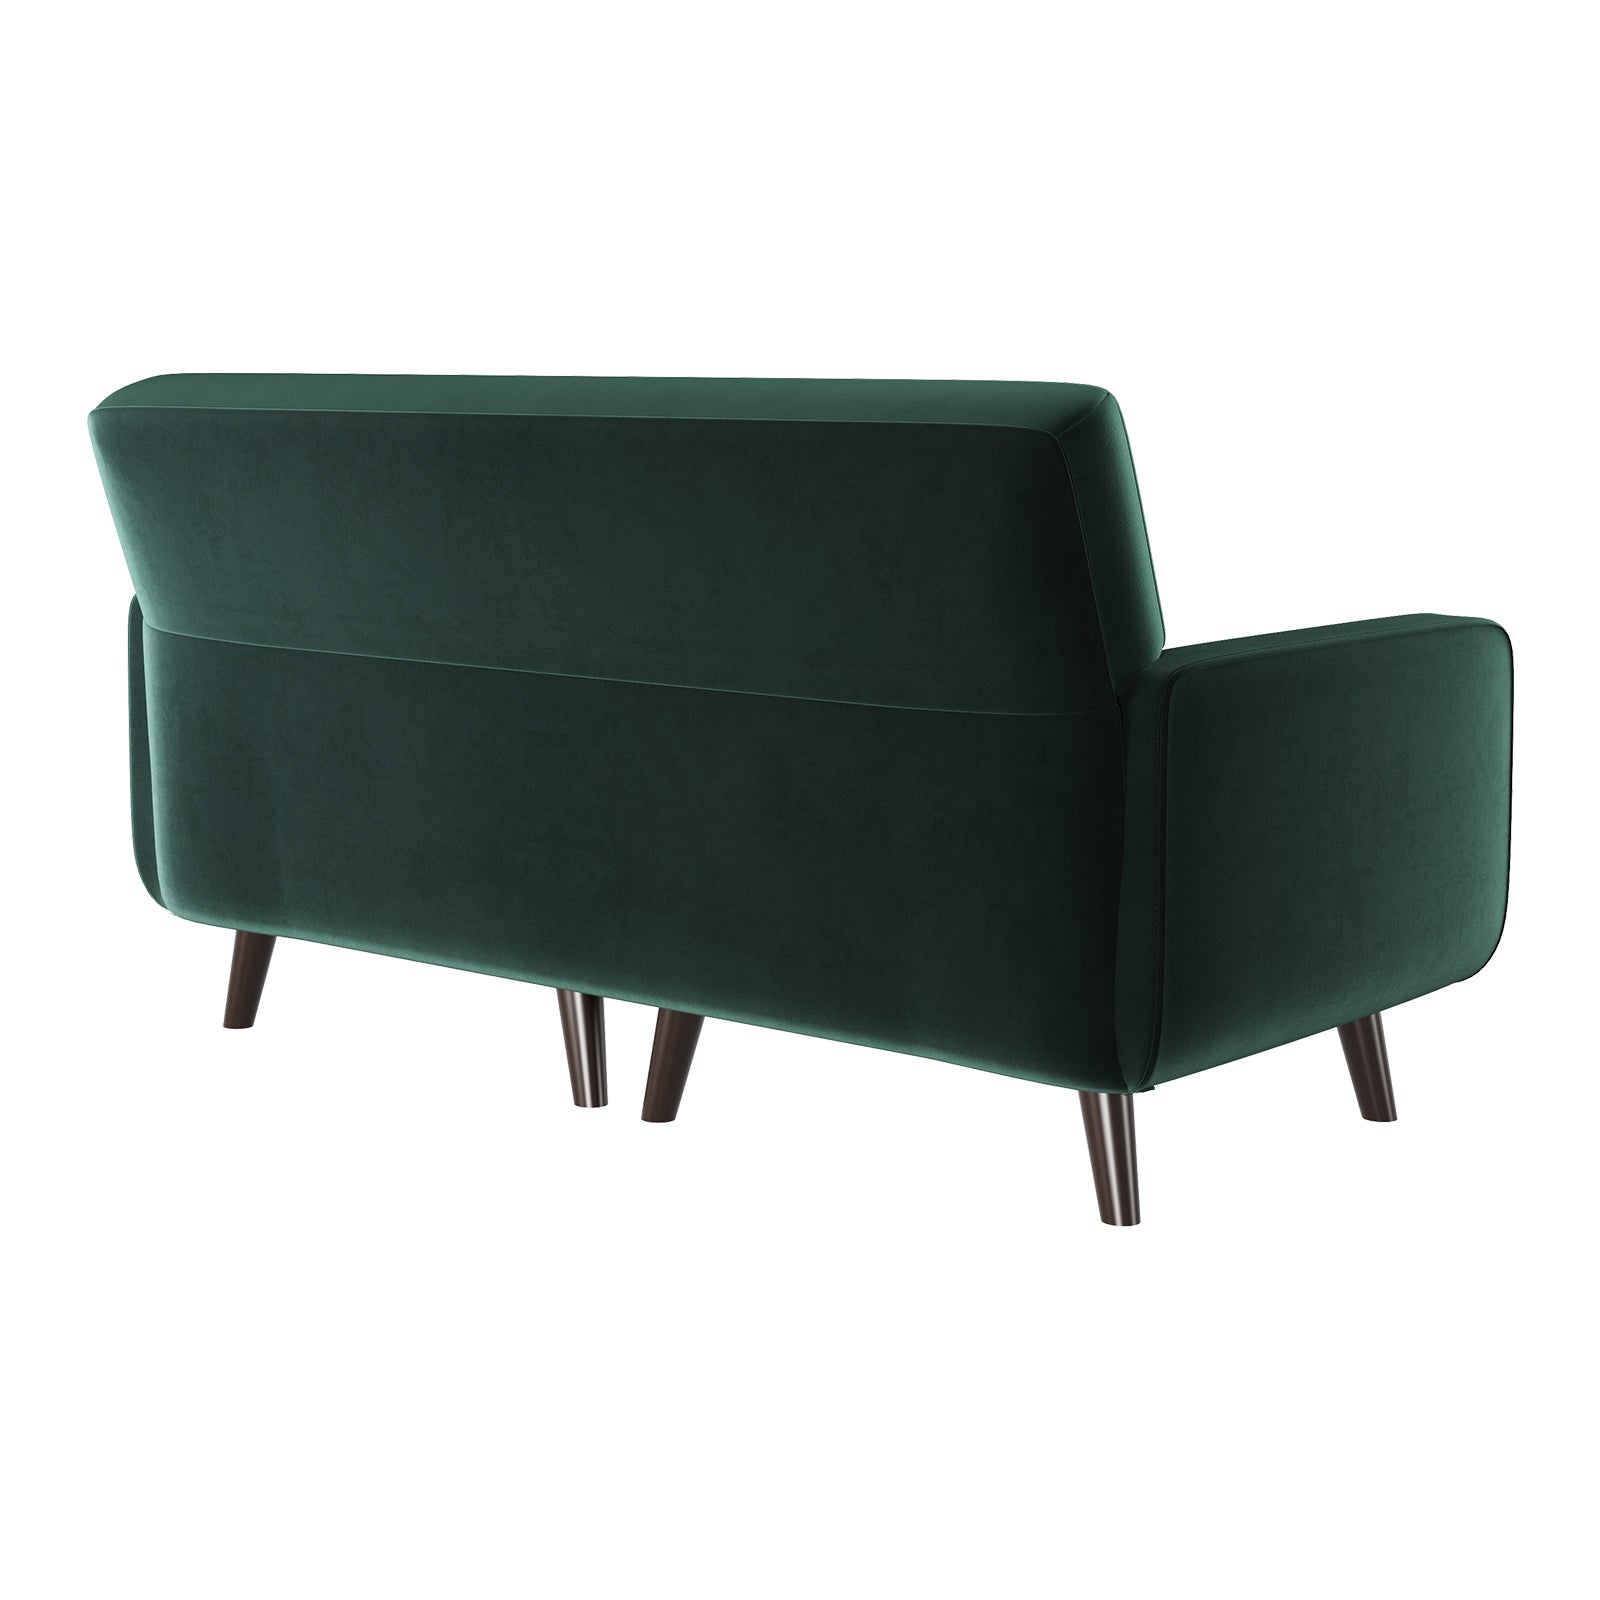 HONBAY Green 2 Seater Velvet Sofa with Square Armrests 